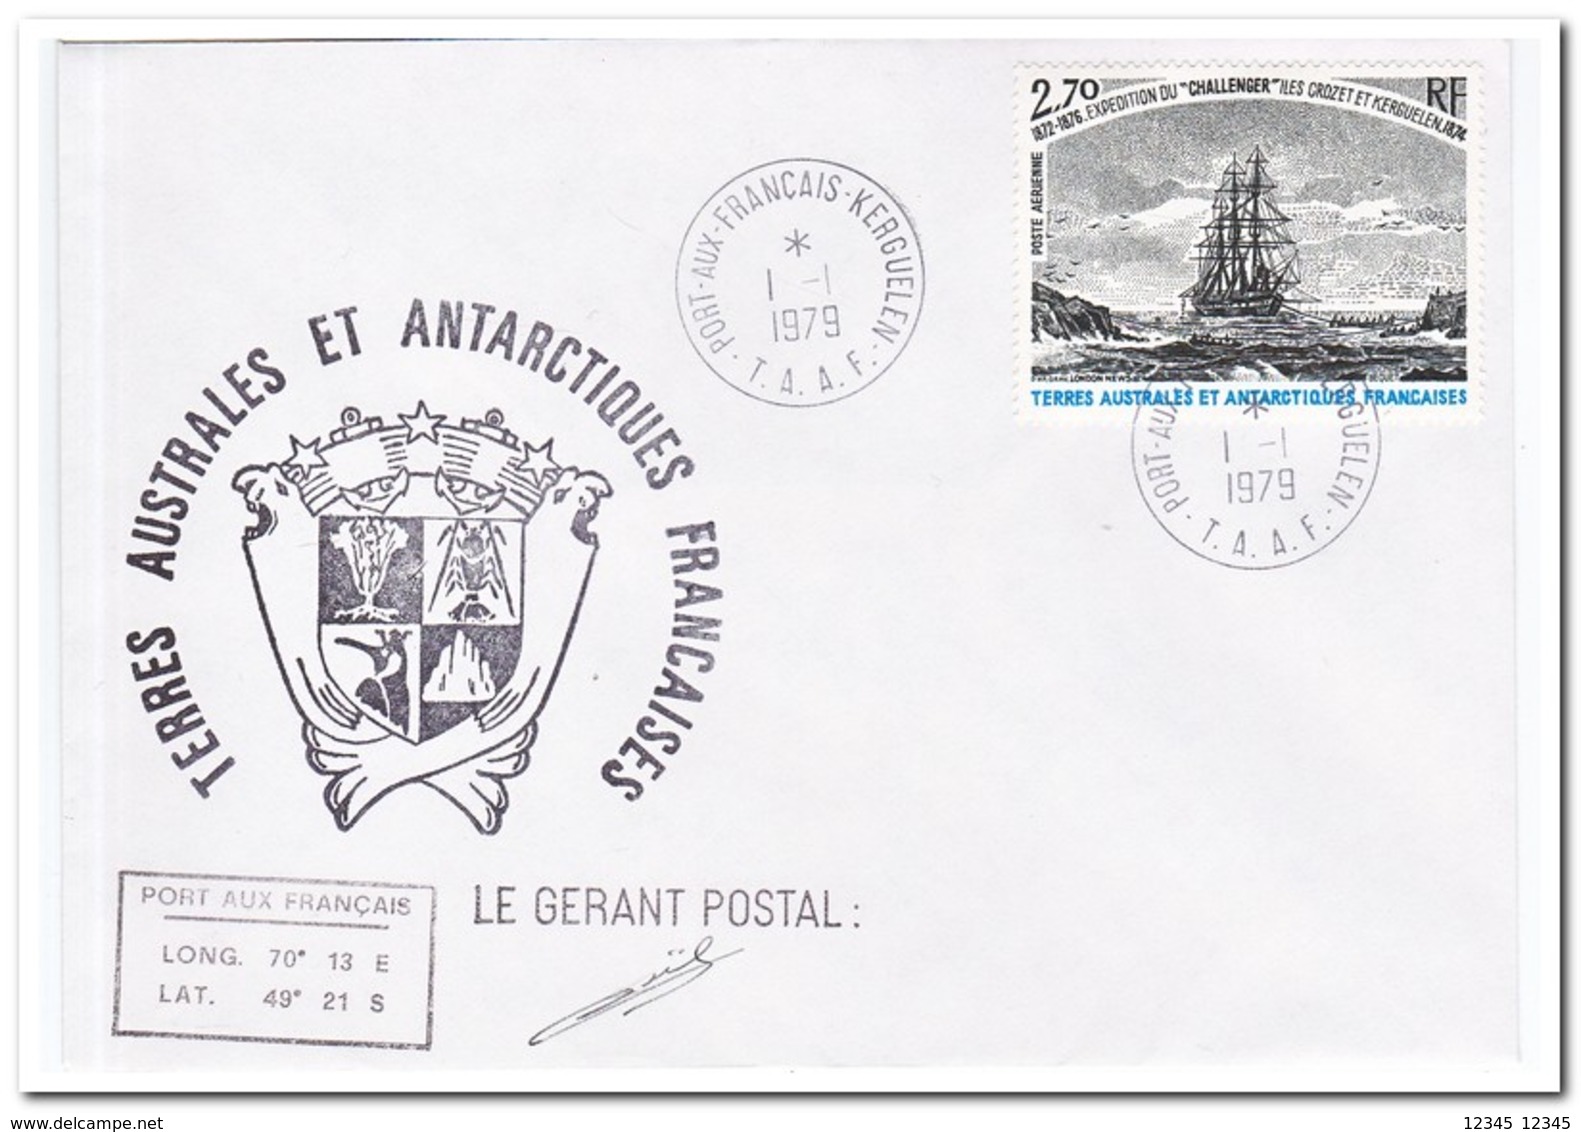 Frans Antarctica 1979, Ship - FDC